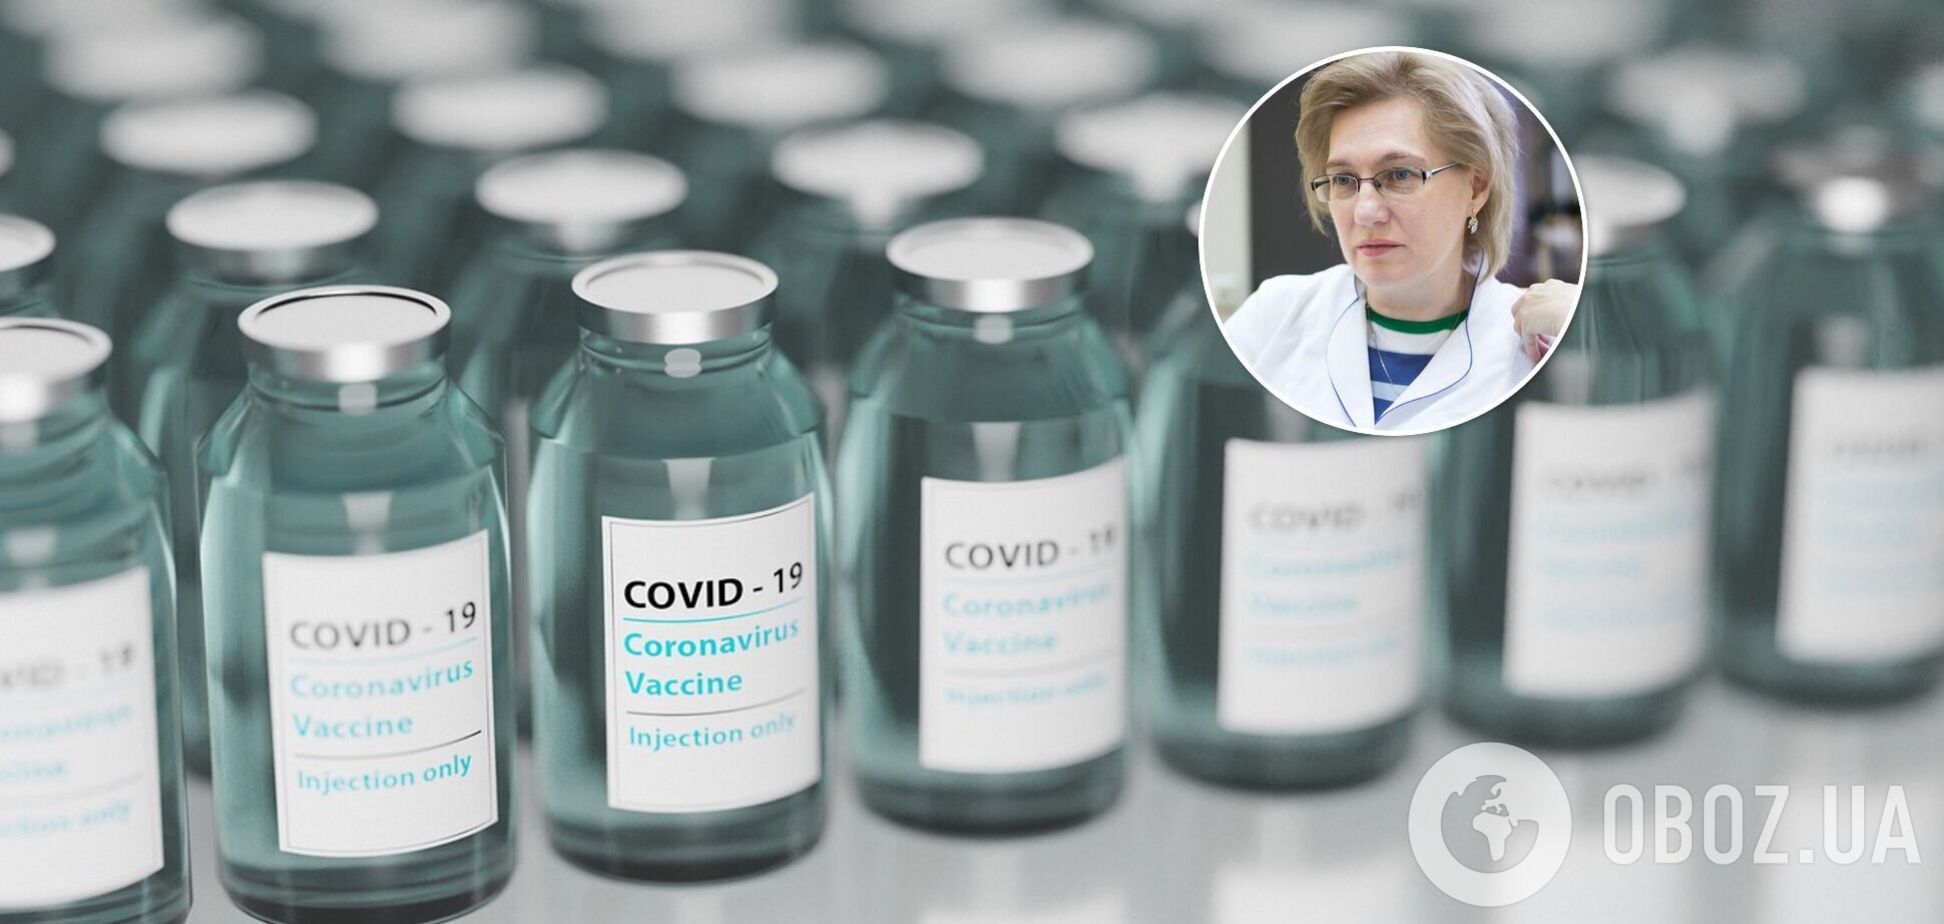 Вакцинация может быть опасной для переболевших COVID-19, – Голубовская